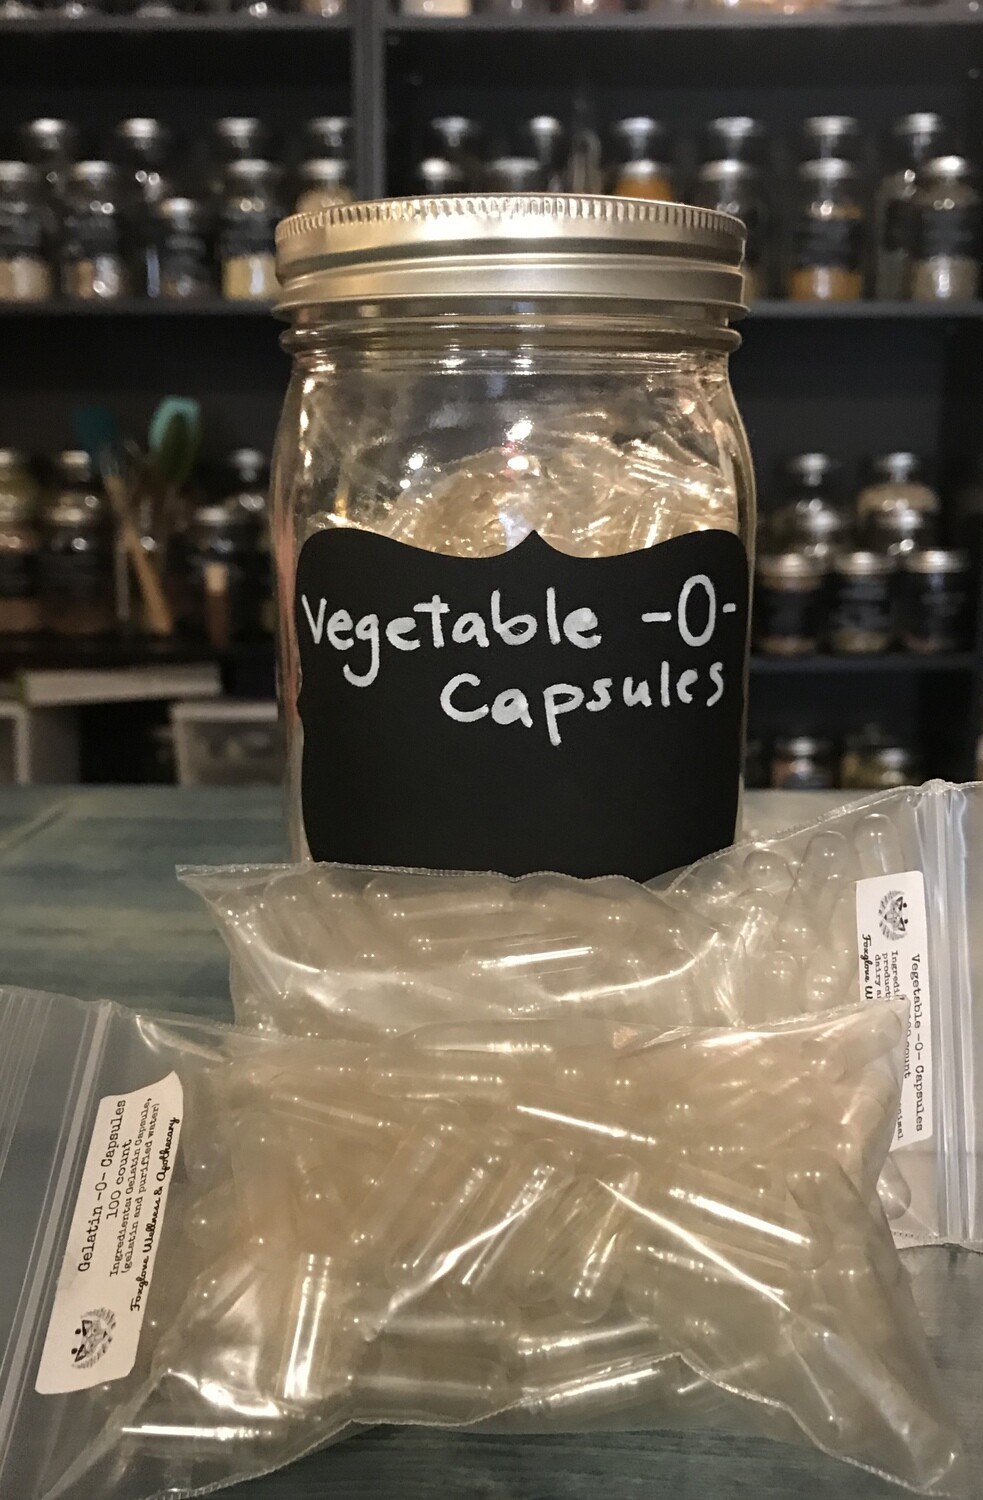 Capsules Size -0-, 100 count gelatin